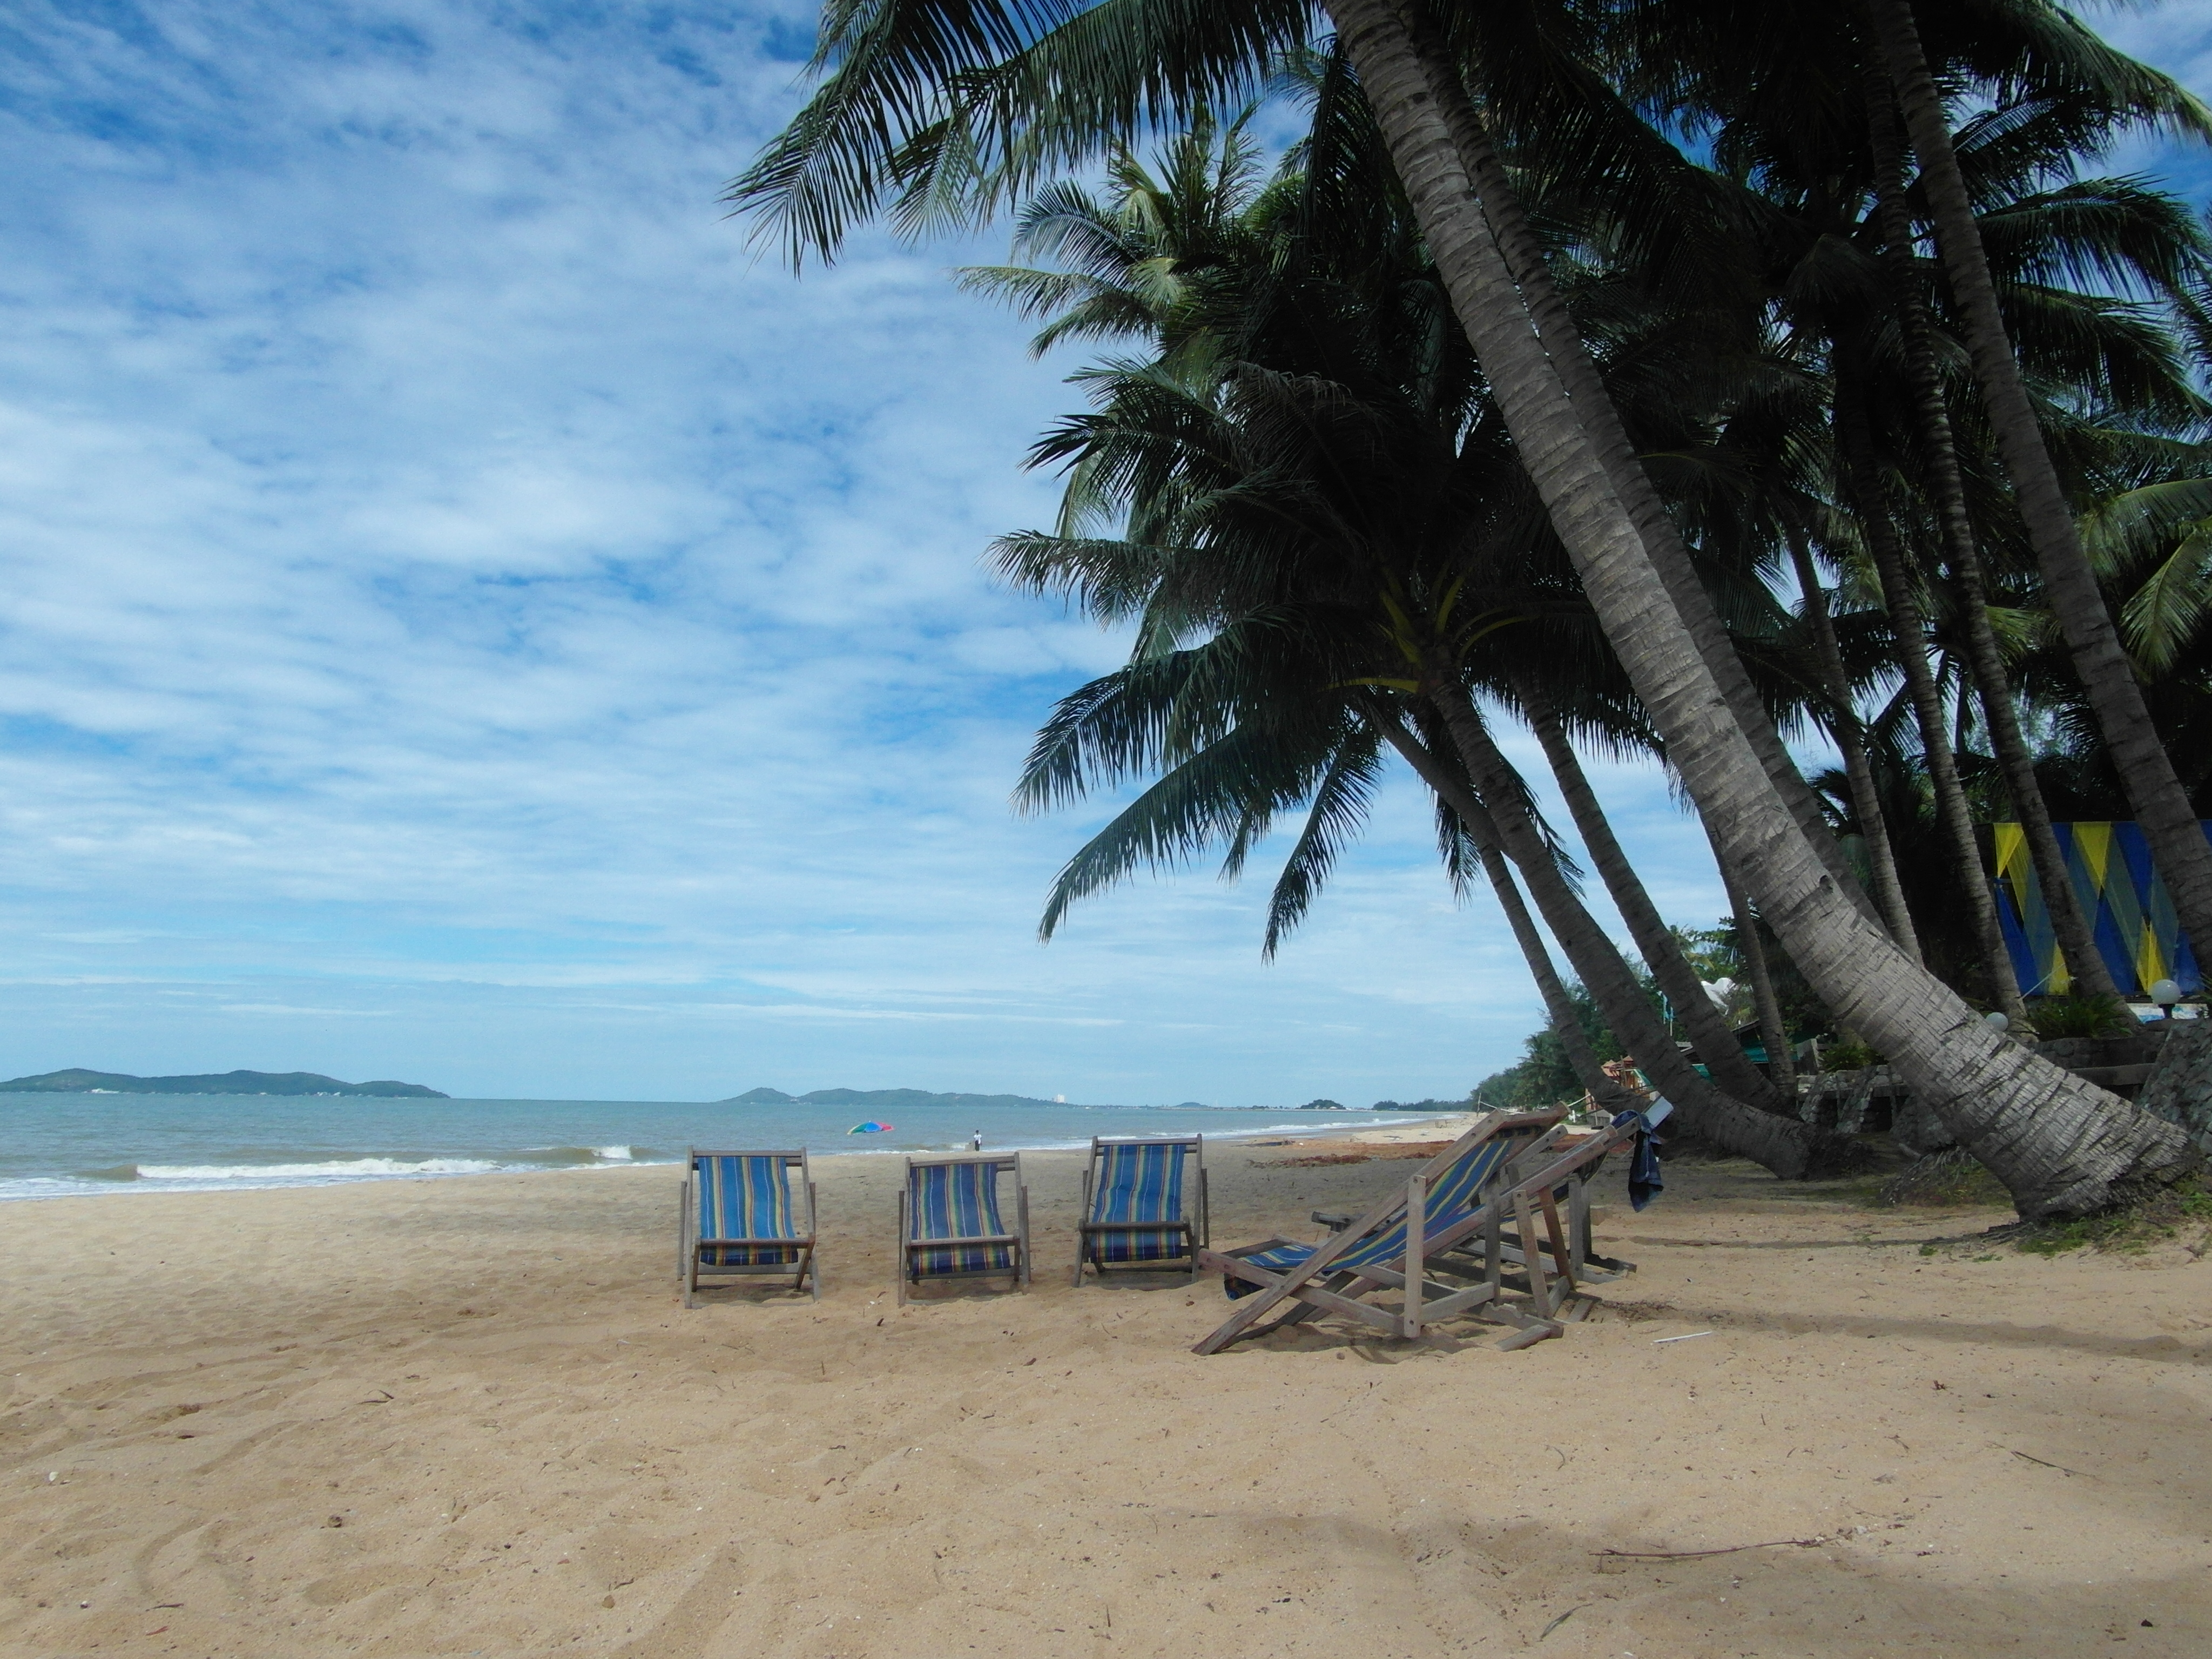 Deckchairs on a tropical beach photo